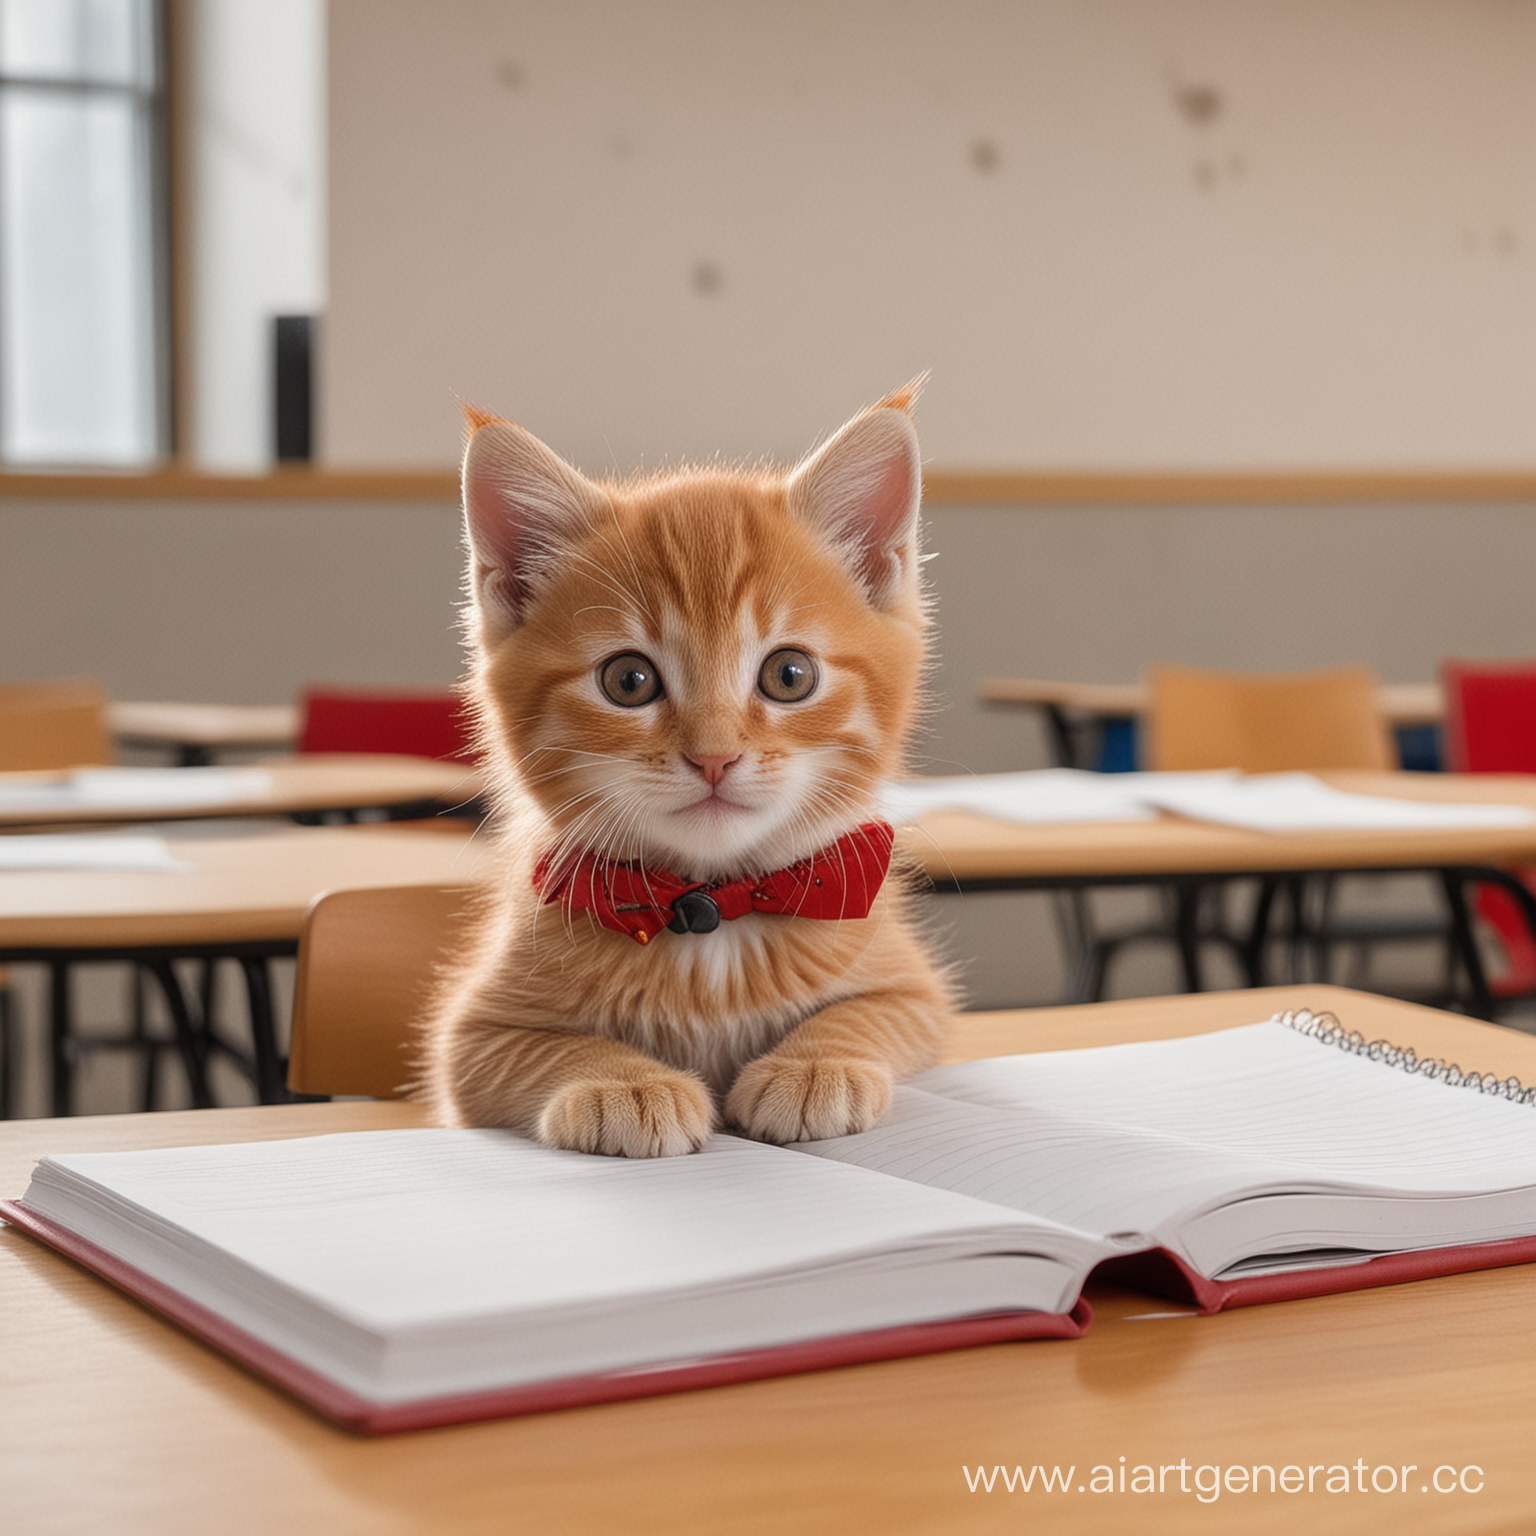 маленький котенок с серыми глазами и красной шерсткой сидит в лекционной аудитории за столом, на столе лежат тетрадь и карандаши, котенок улыбается